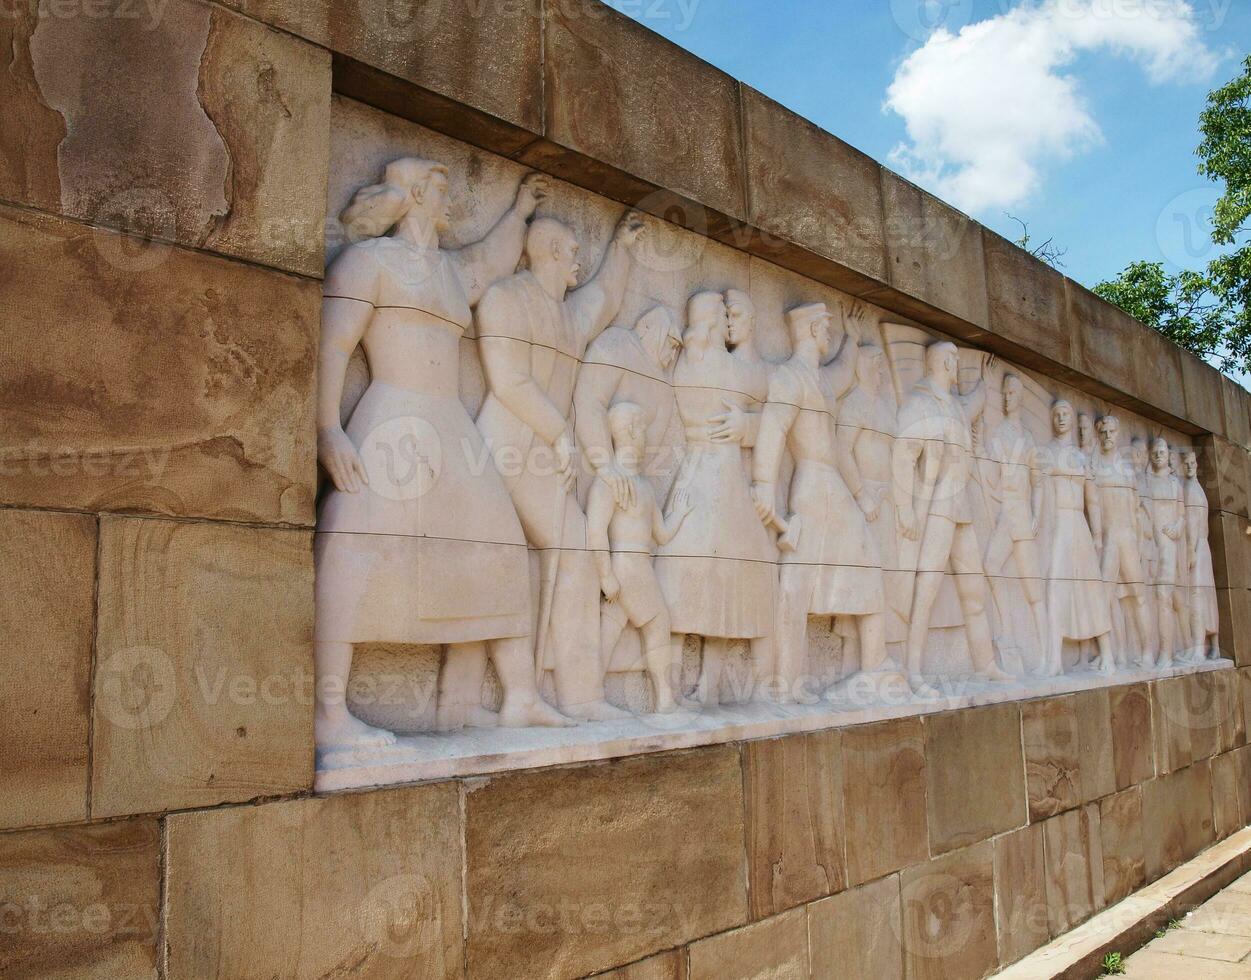 vägg av hjältar, andra värld krig relief monument - vinkel skott foto